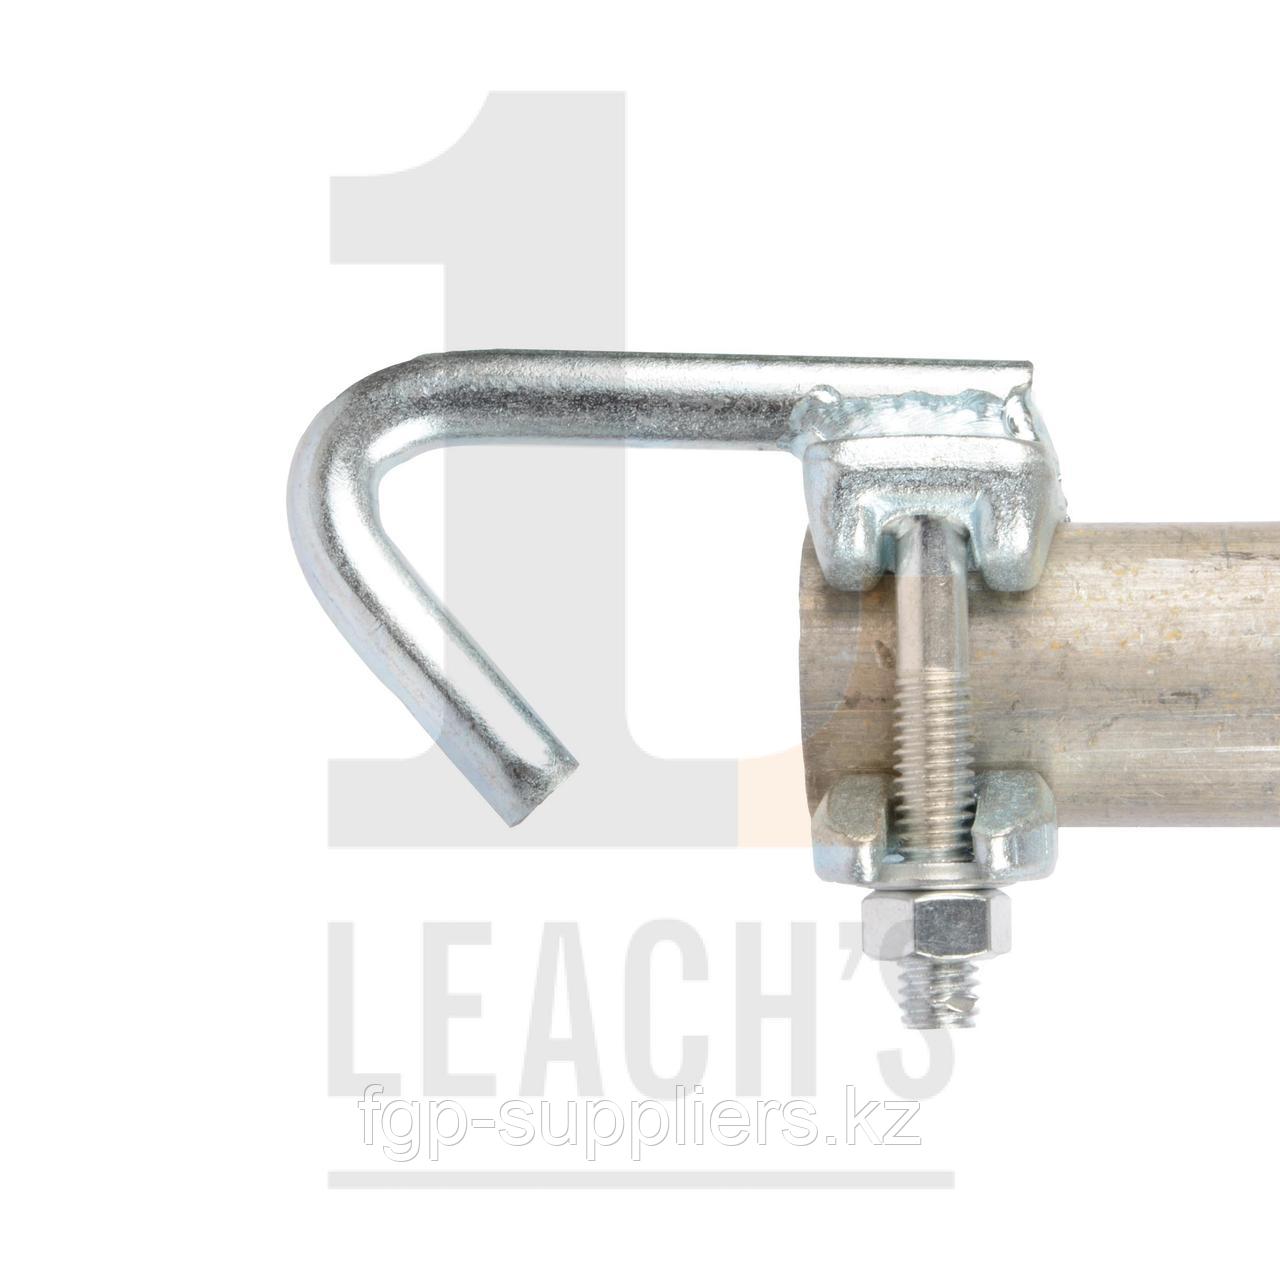 Internal Anchor Hook Scaffold Fitting / Крючок для подвески изогнутый внутрь для крепления подмости